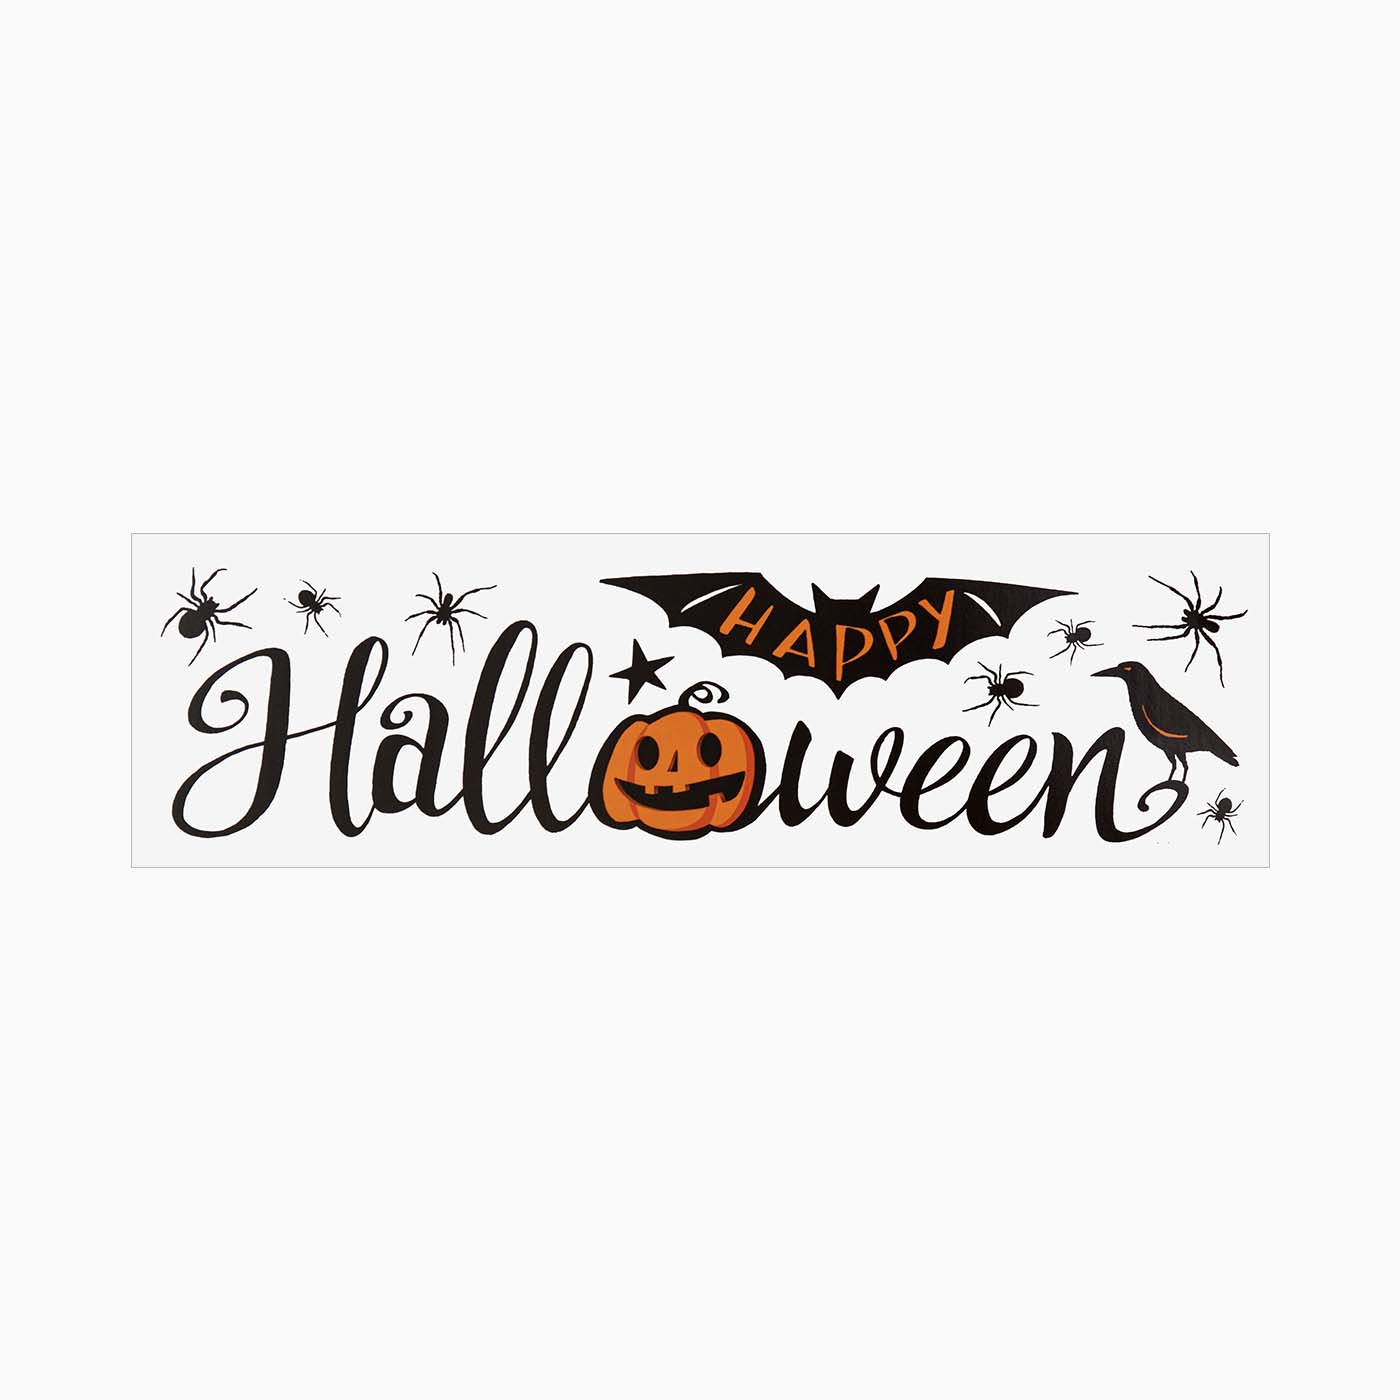 "Halloween" wall sticker